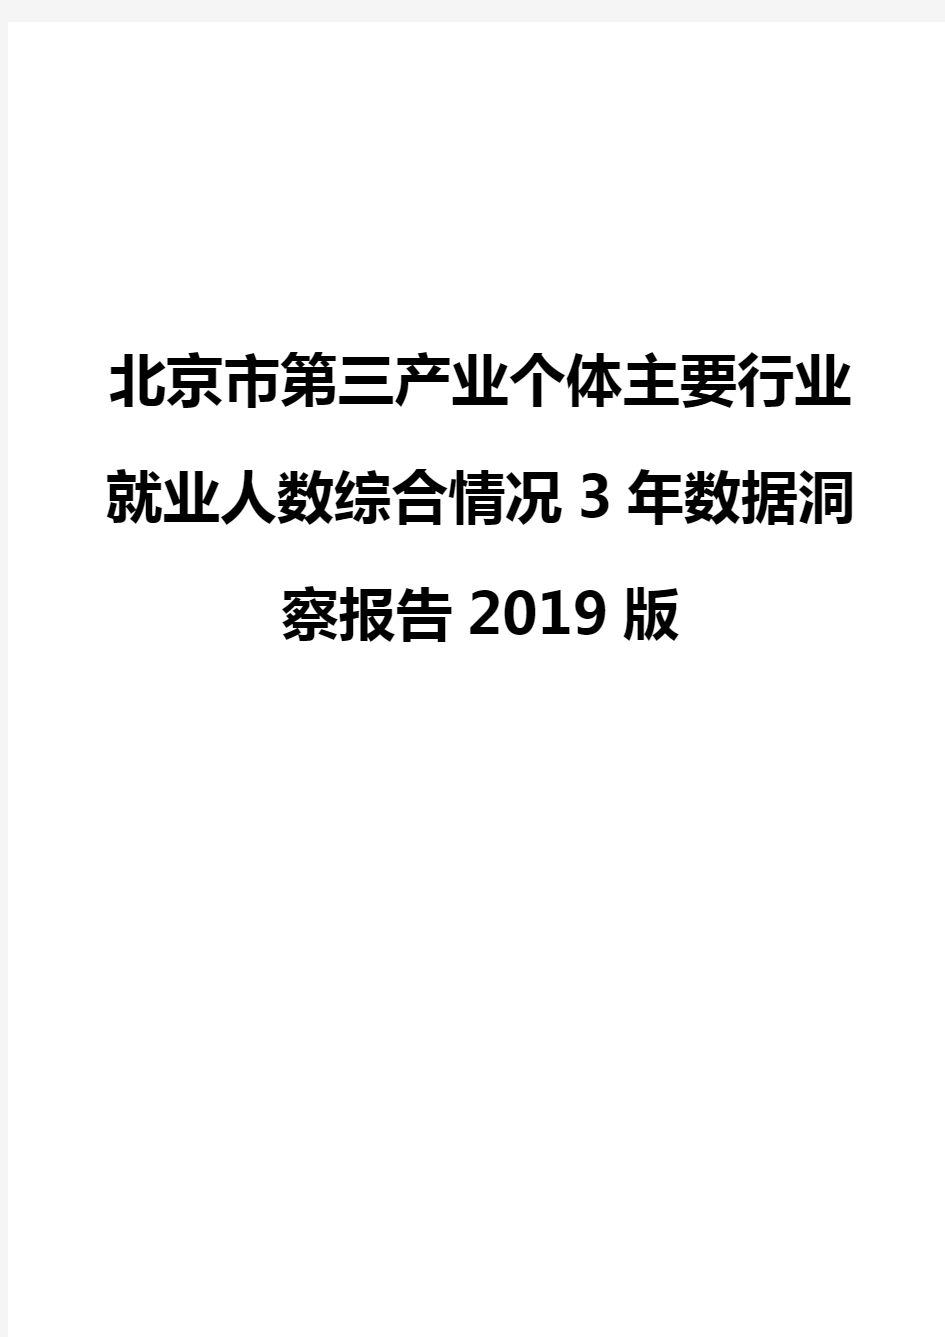 北京市第三产业个体主要行业就业人数综合情况3年数据洞察报告2019版